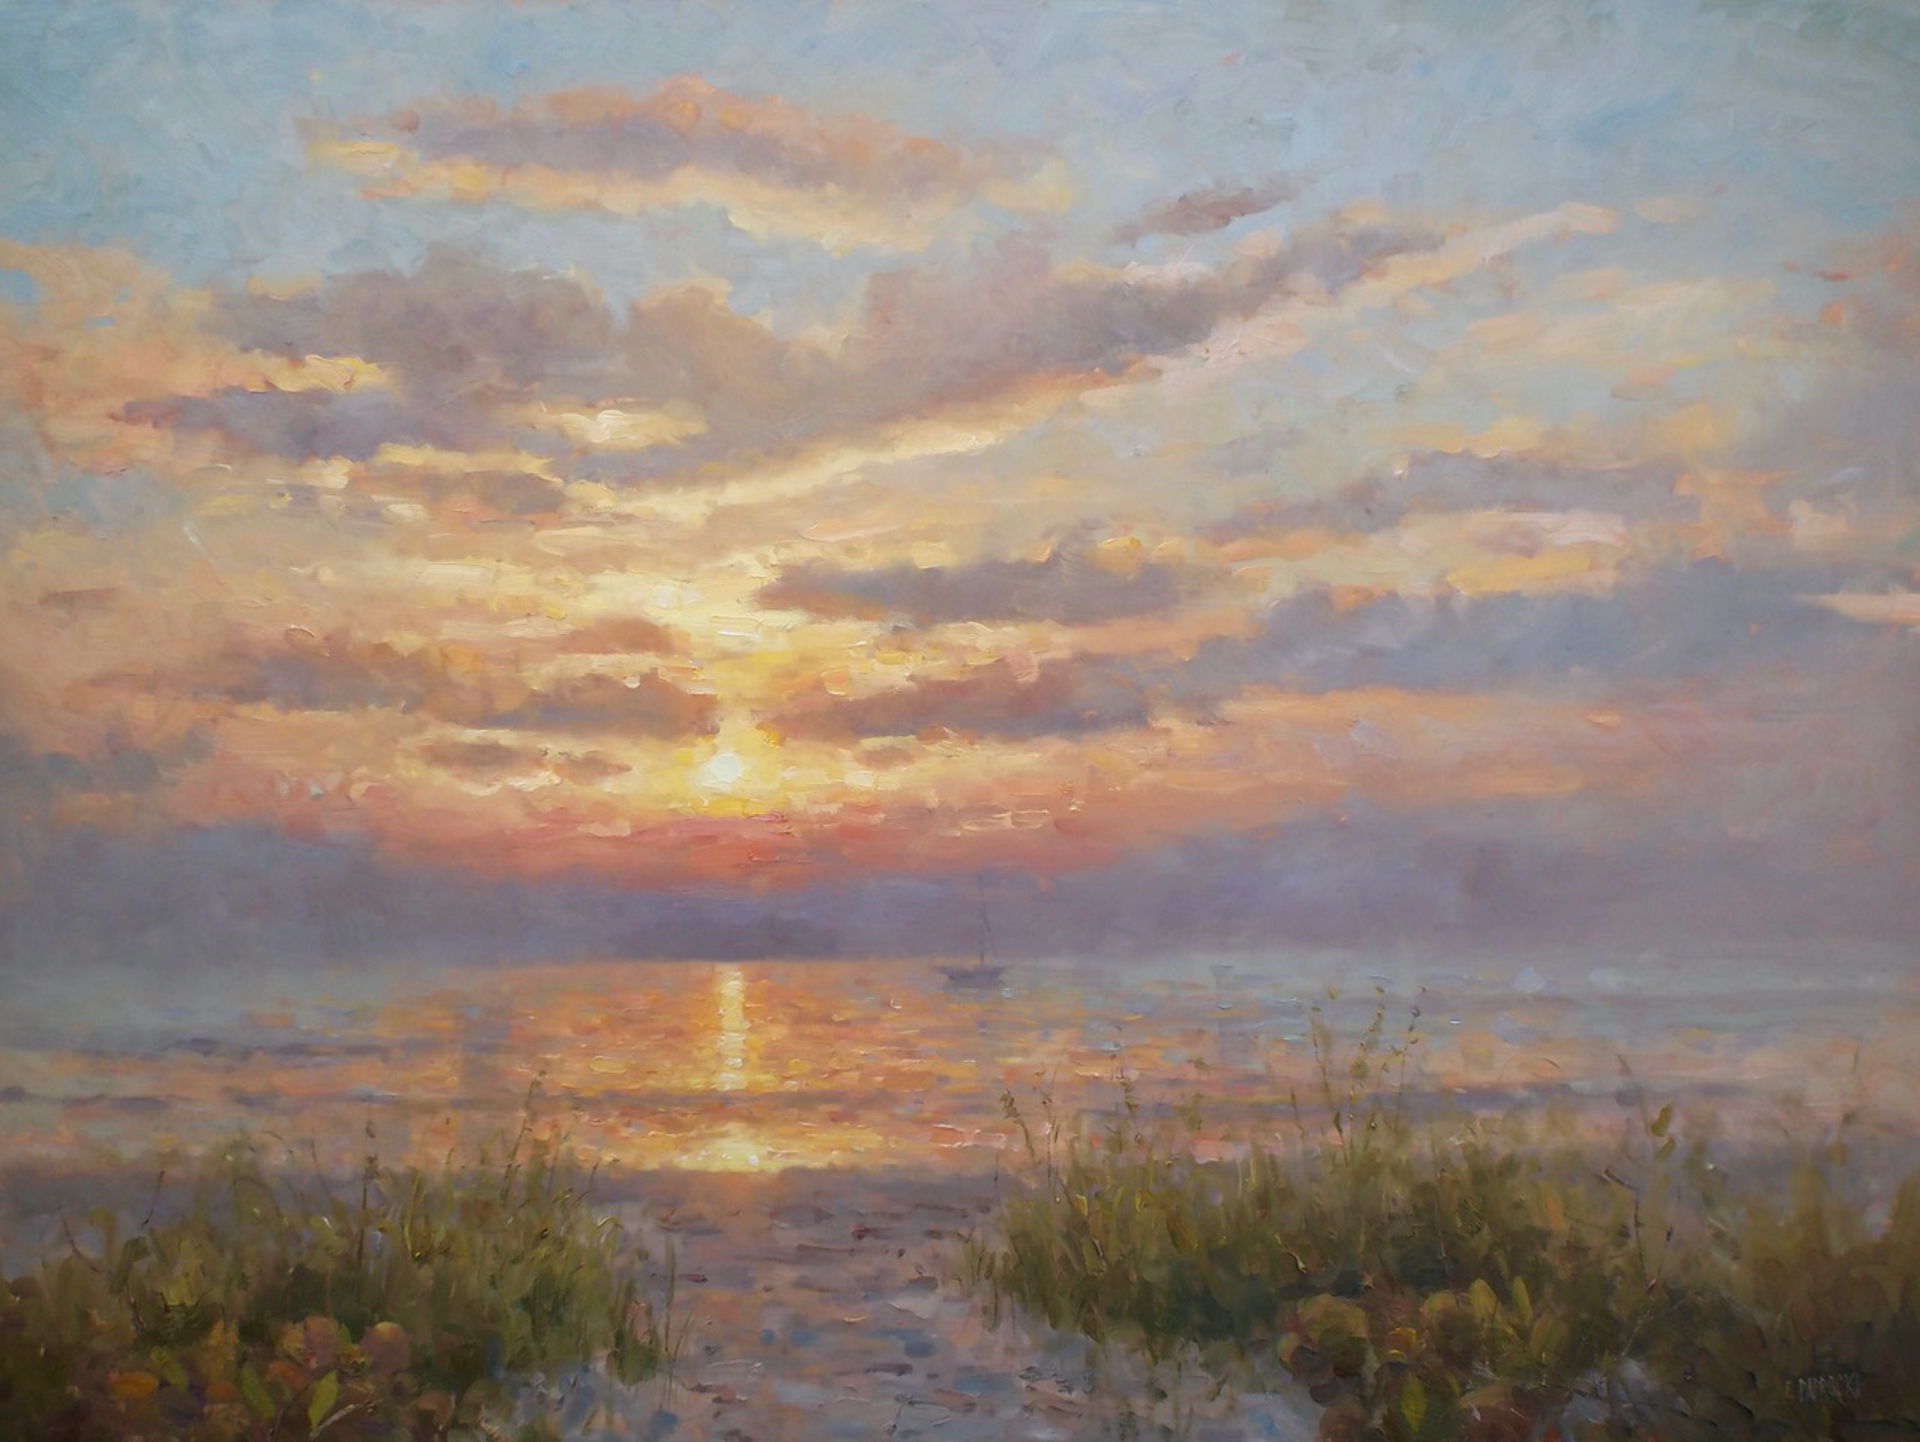 Gulf Sunset by EJ Paprocki